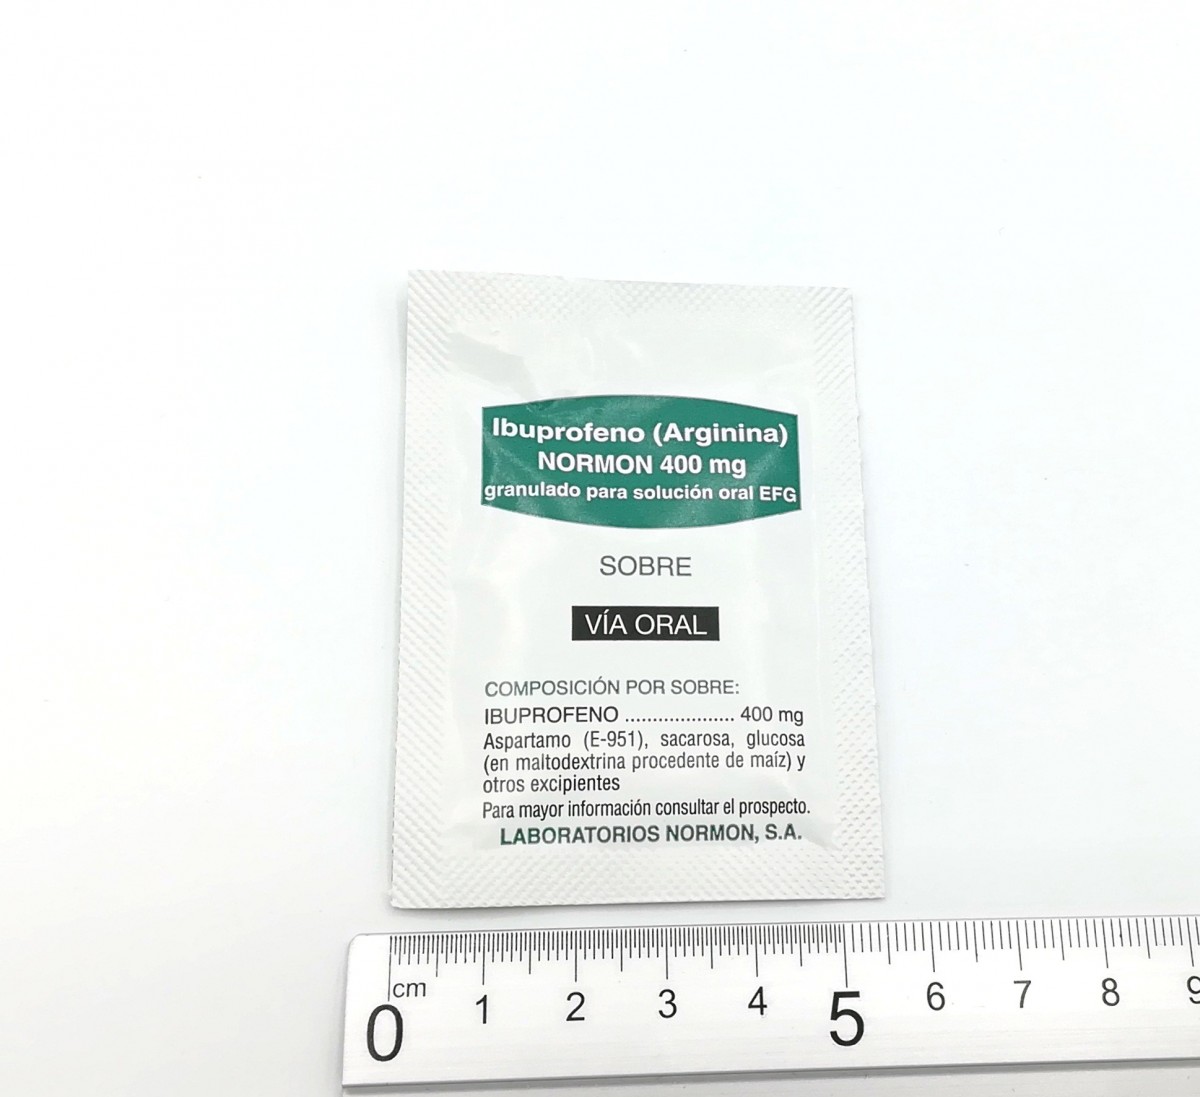 IBUPROFENO (ARGININA) NORMON 400 mg GRANULADO PARA SOLUCION ORAL EFG , 30 sobres fotografía de la forma farmacéutica.